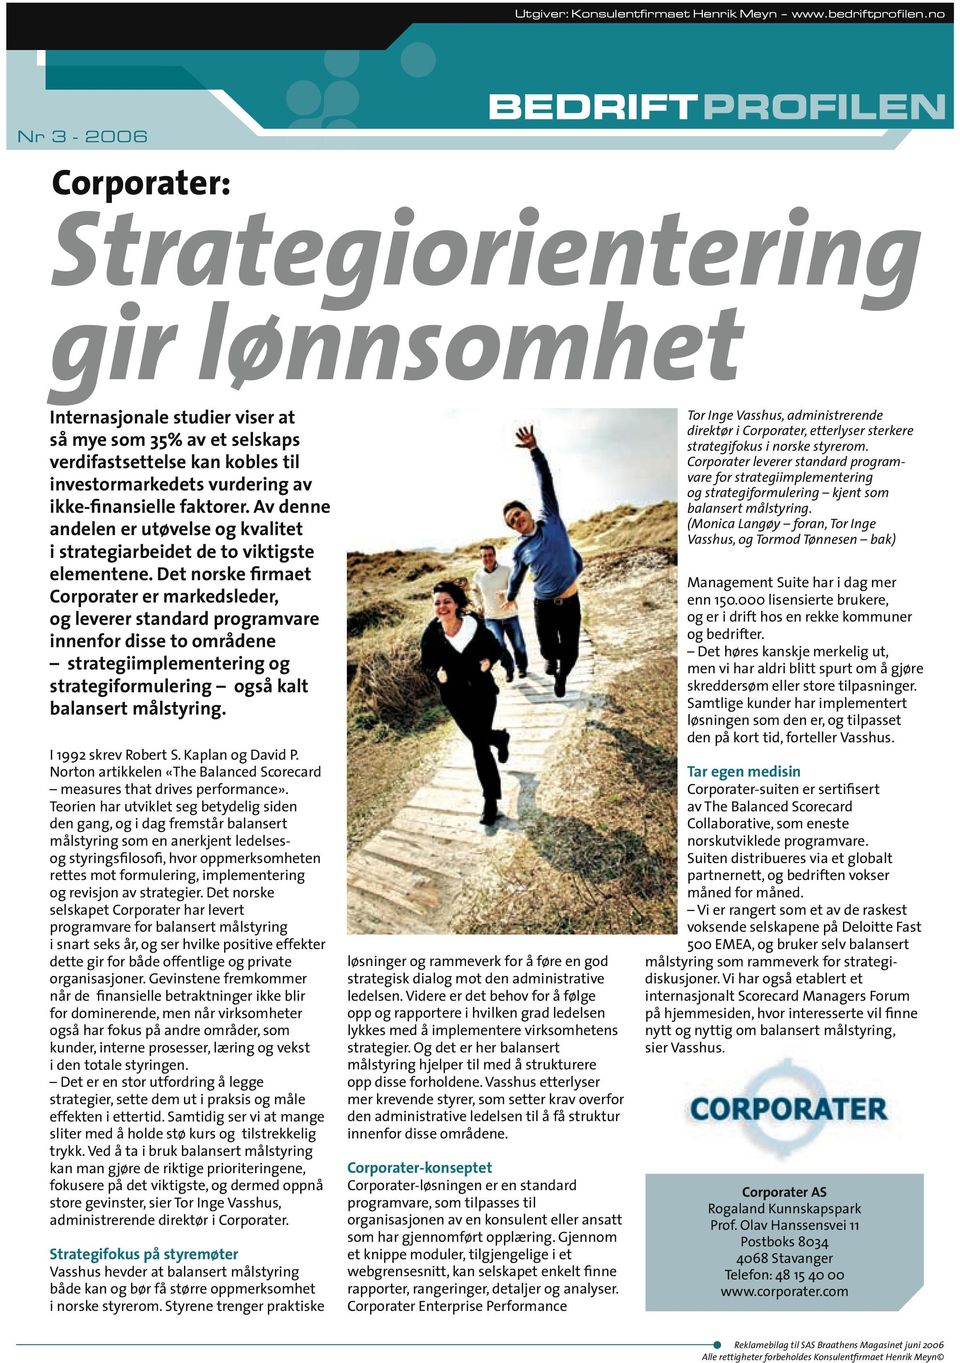 Det norske firmaet Corporater er markedsleder, og leverer standard programvare innenfor disse to områdene strategiimplementering og strategiformulering også kalt balansert målstyring.